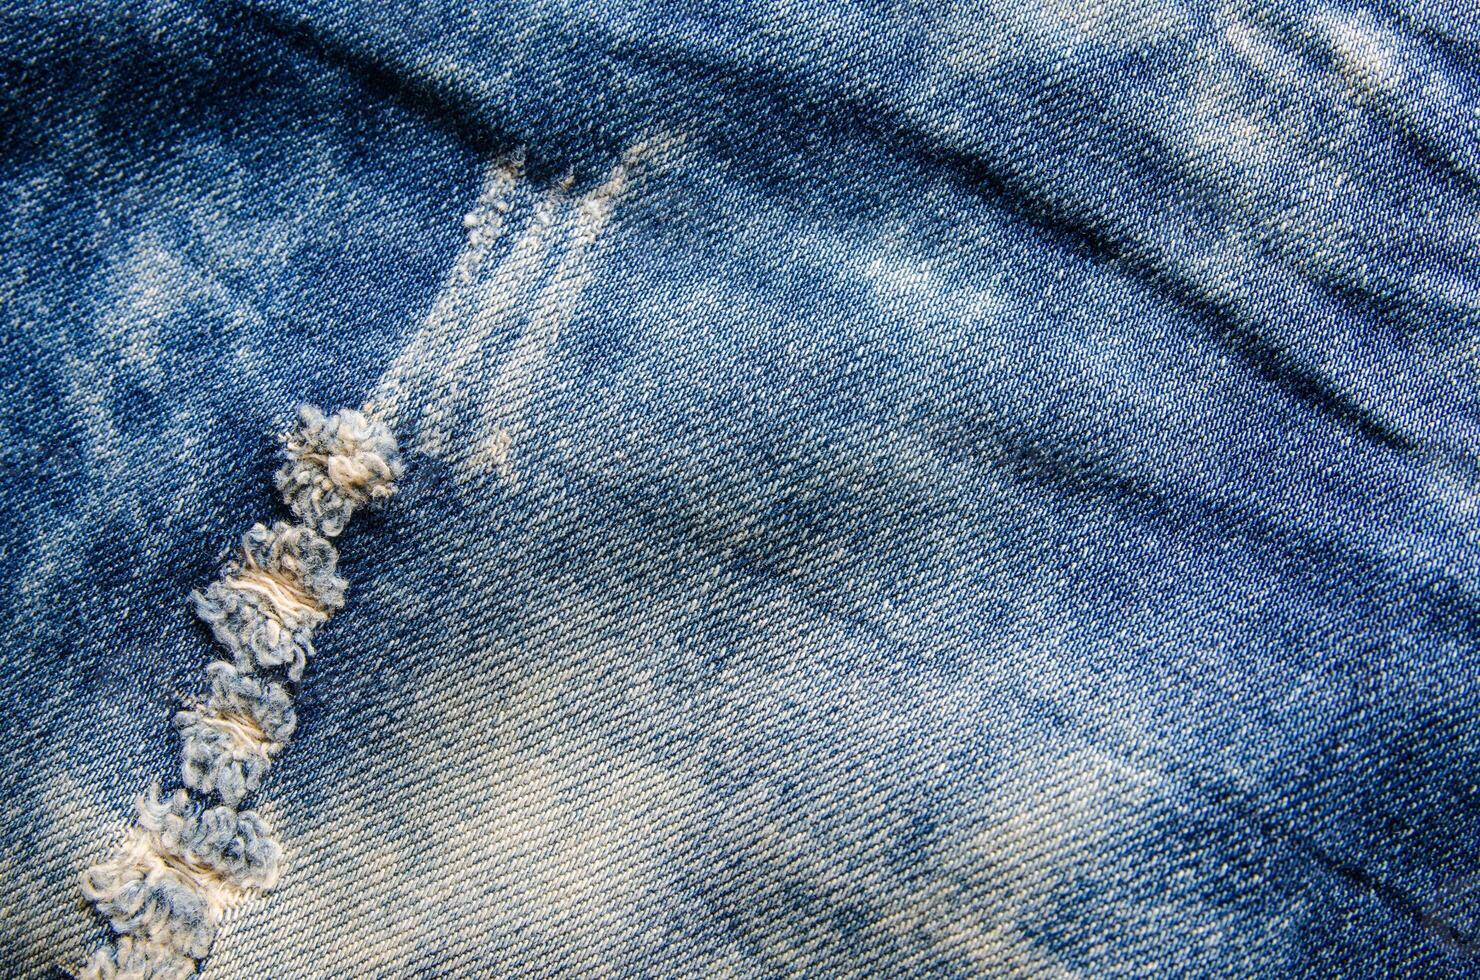 rughe blu jeans struttura. jeans sfondo. foto